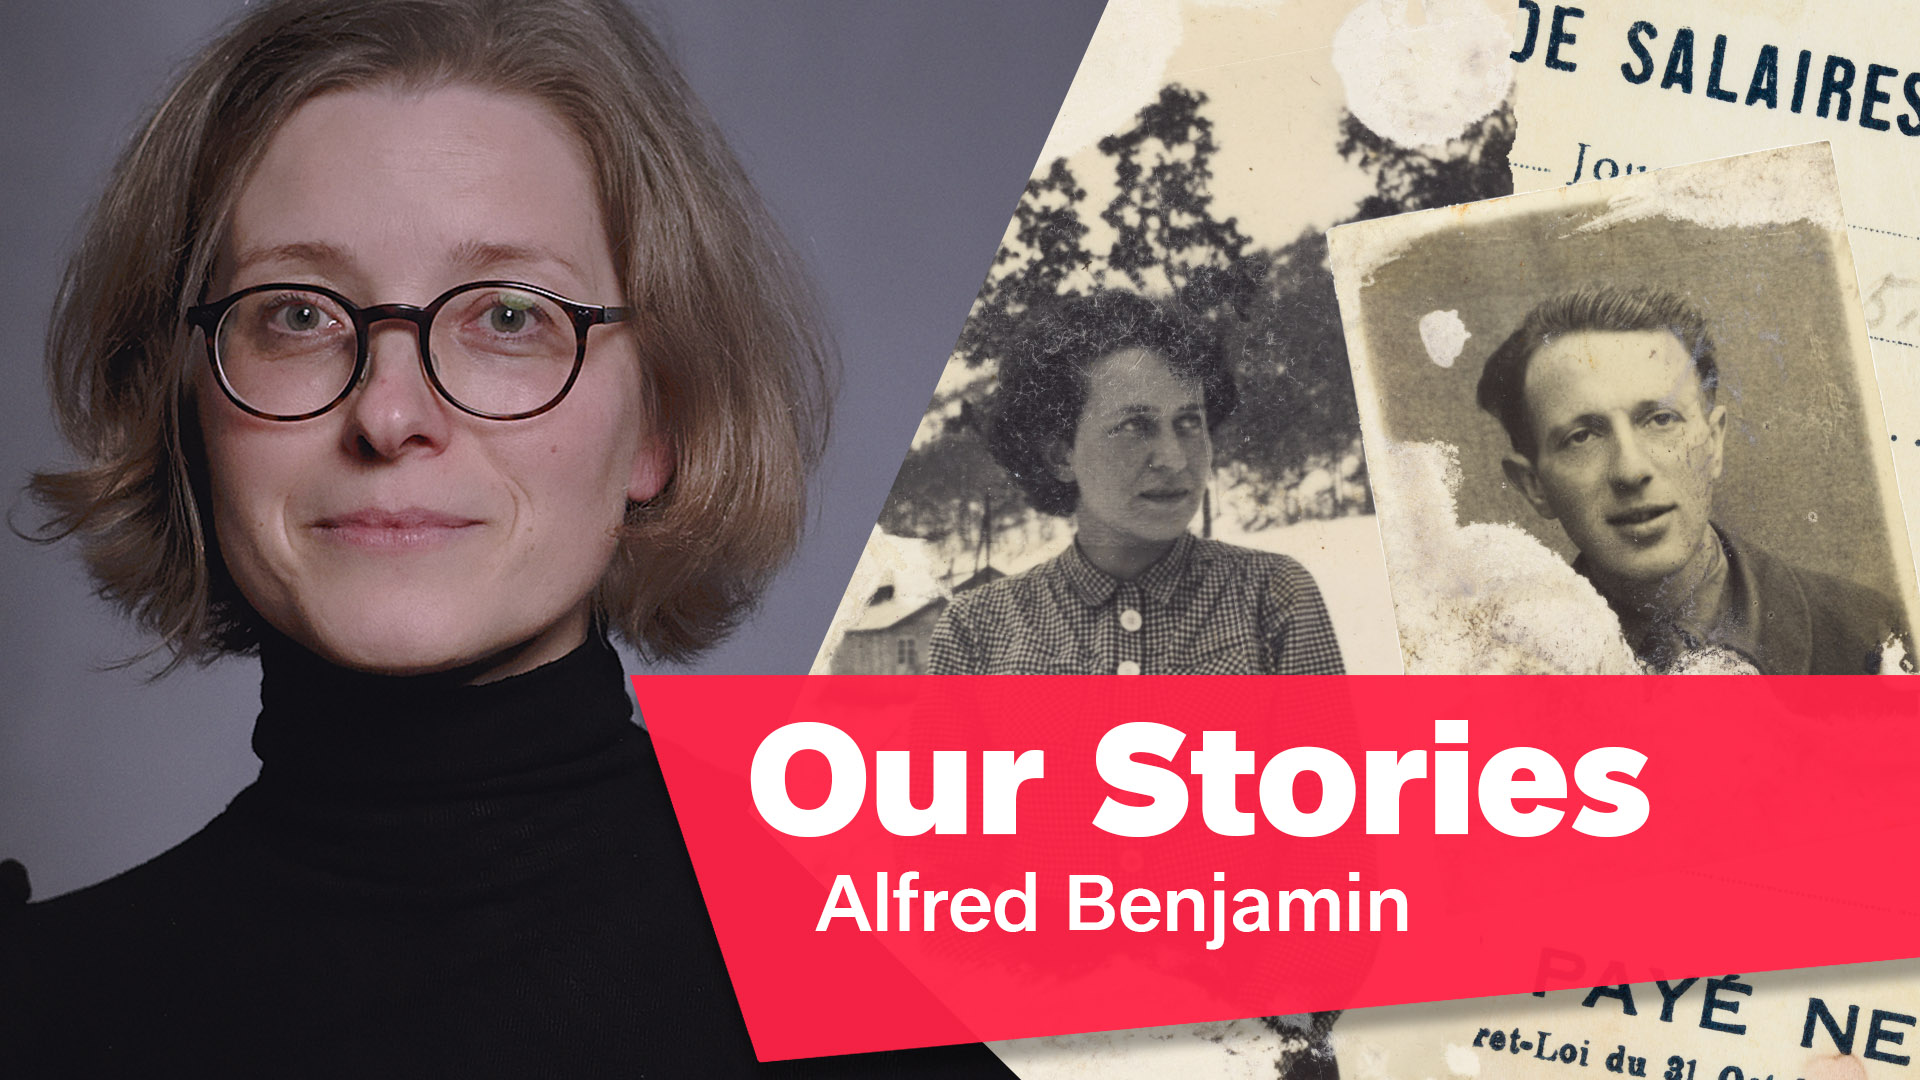 Porträtfoto von Ulrike Neuwirth, daneben alte Schwarz-Weiß-Fotos von einem Mann und einer Frau, rechts unten im Bild der Schriftzug „Our Stories: Alfred Benjamin”.